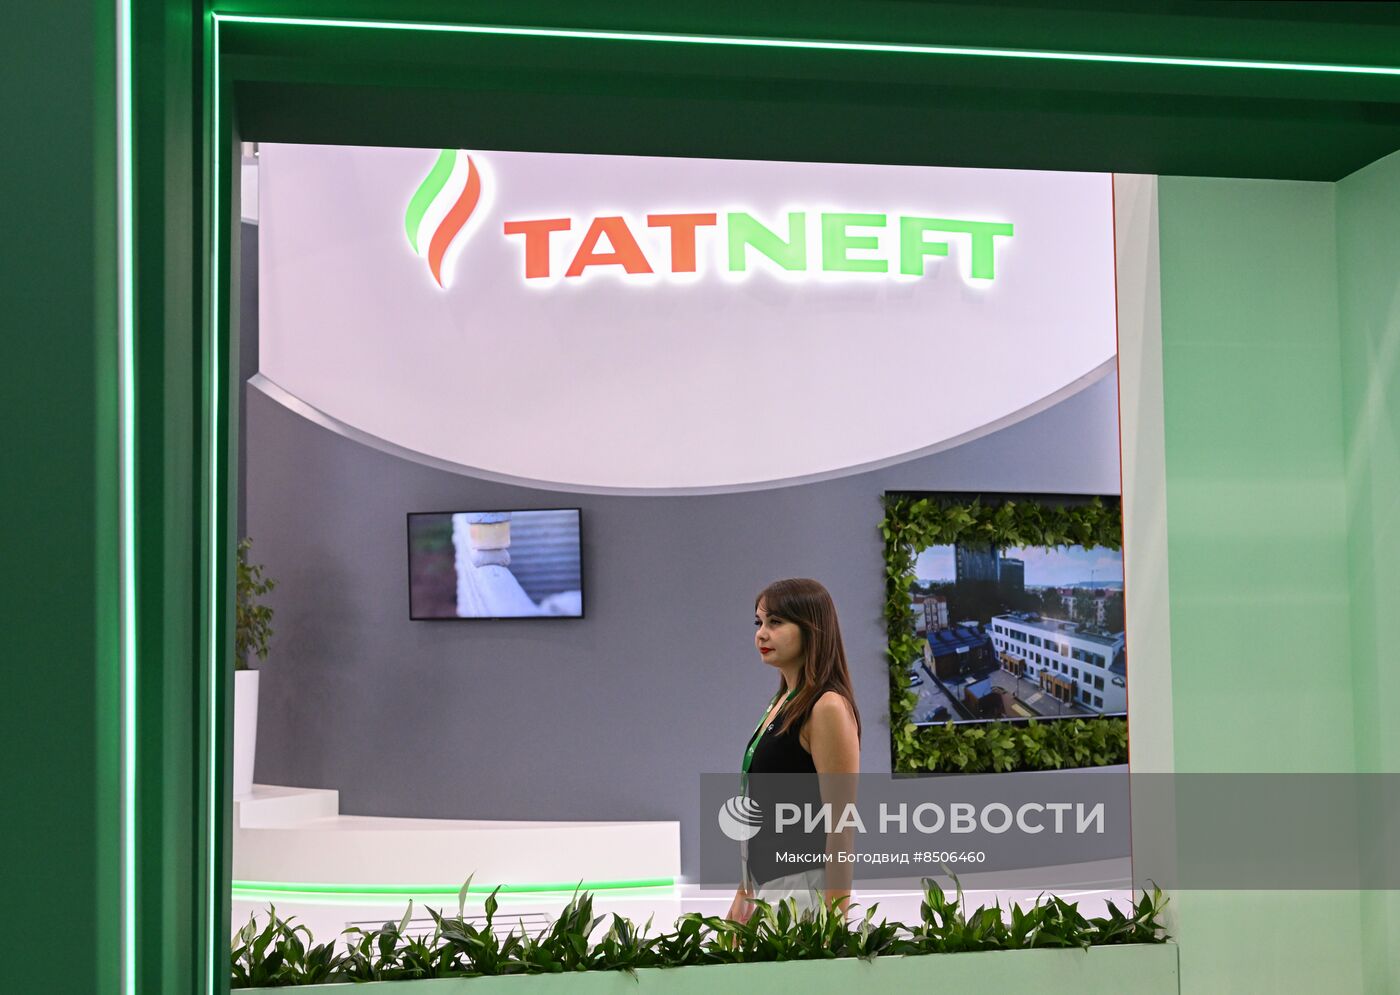 Выставка TatOil в рамках нефтегазохимического форума в Татарстане